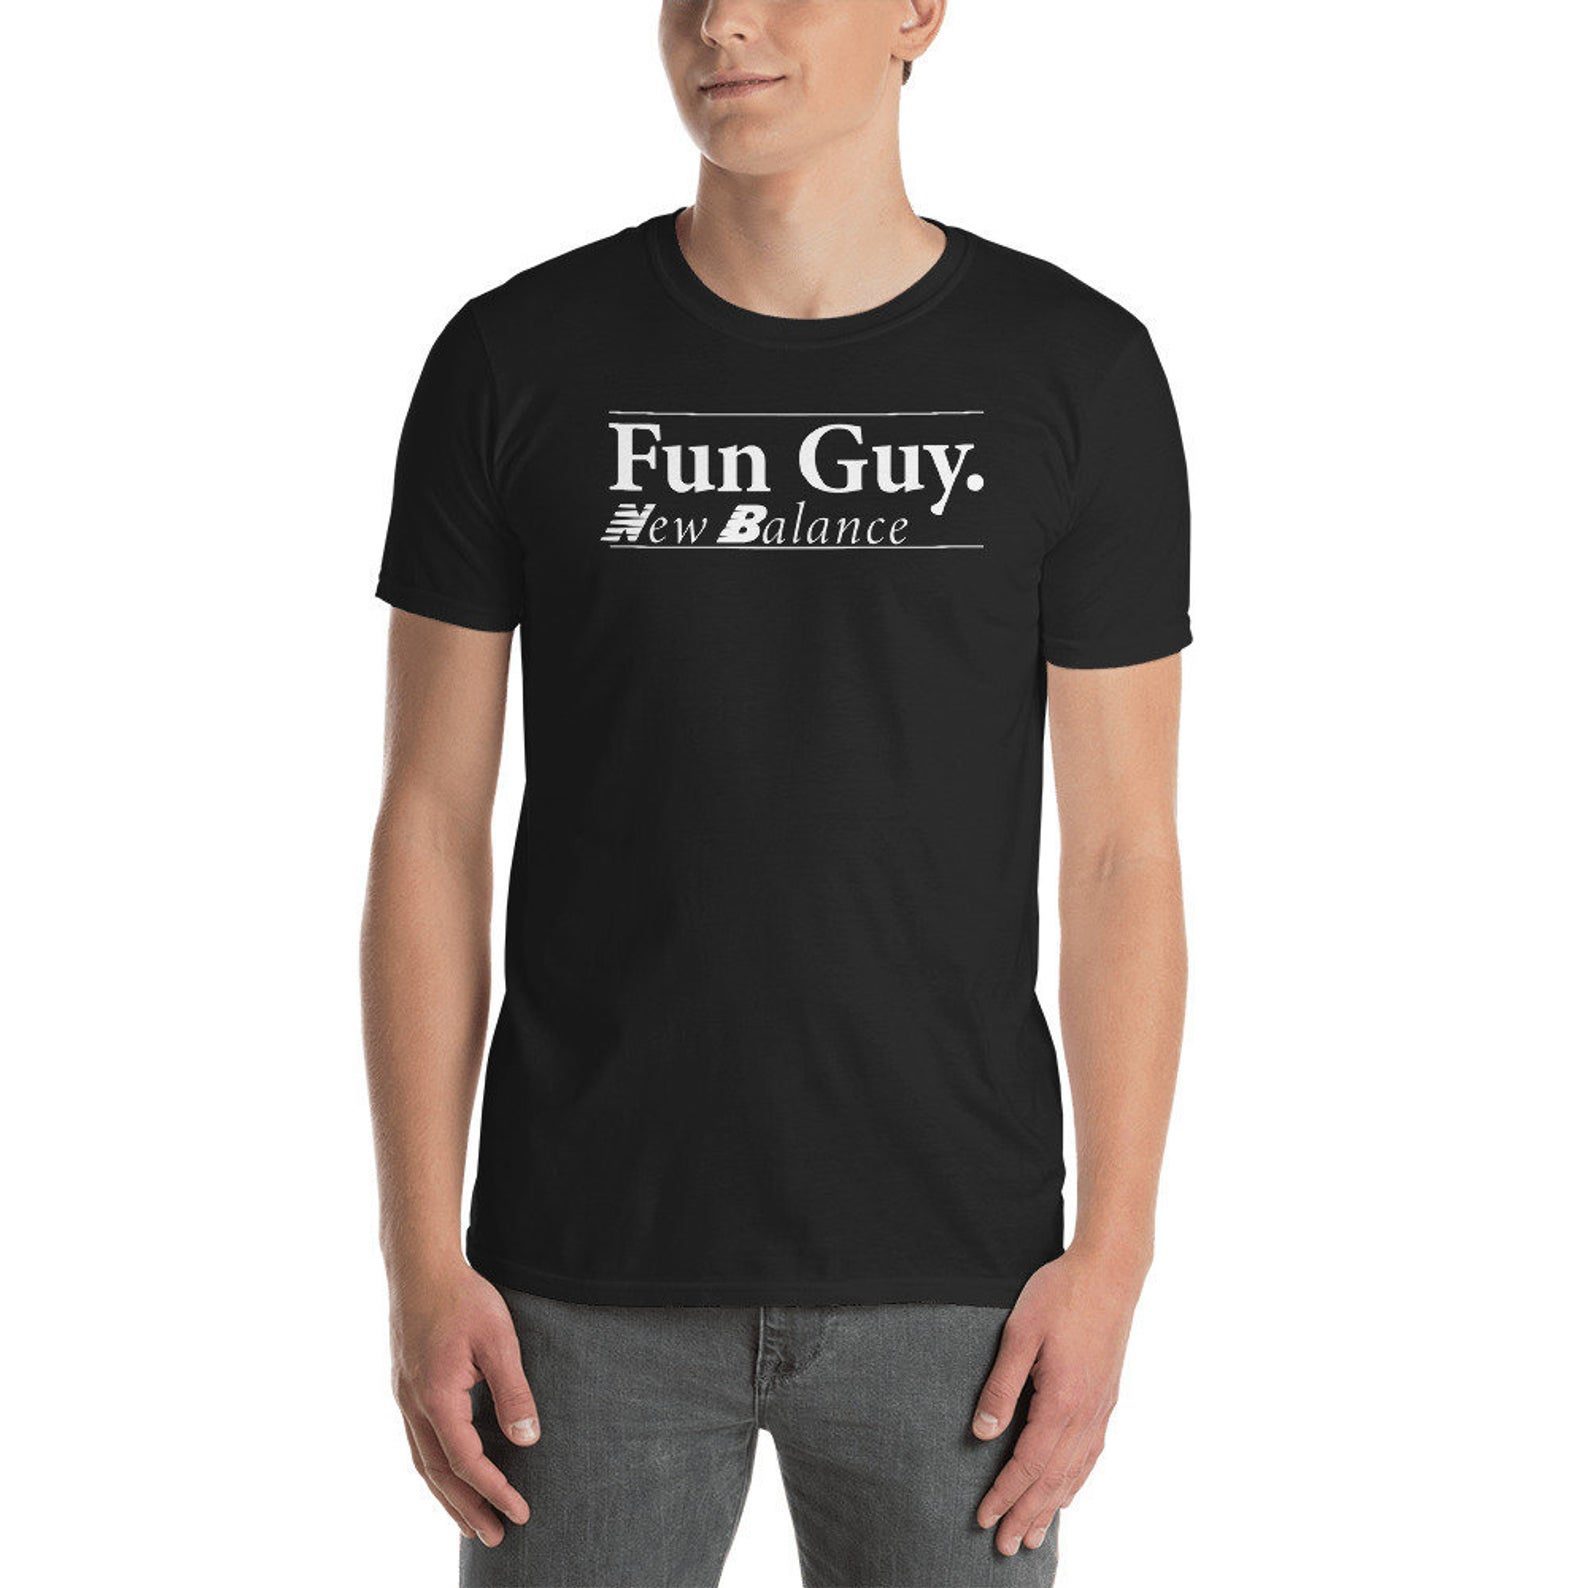 fun guy new balance shirt for sale